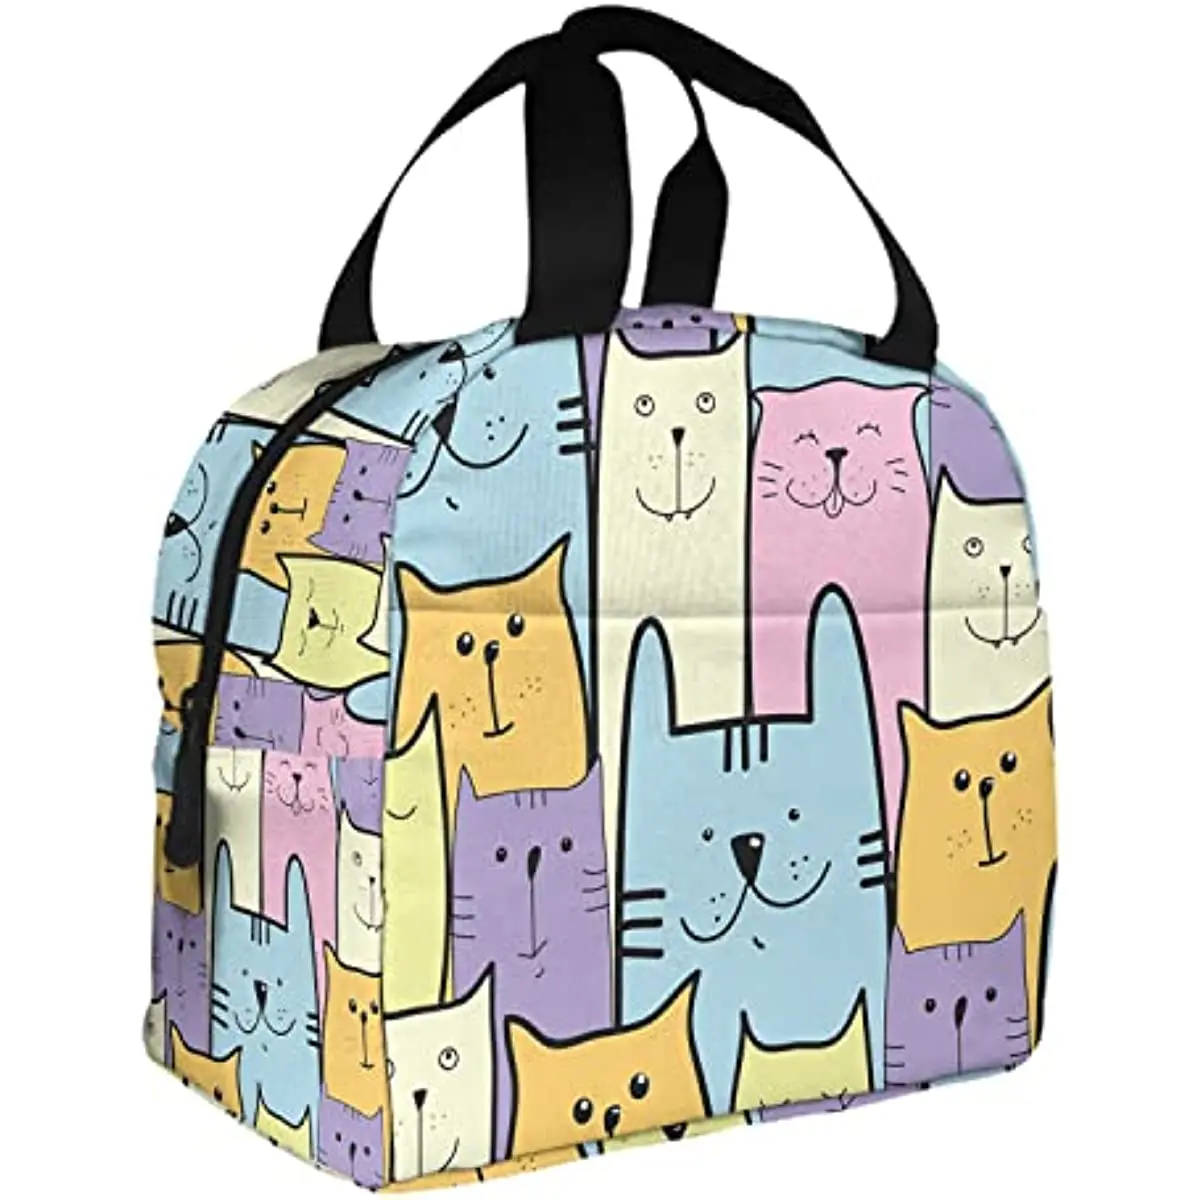 

Изолированная сумка для ланча с кошками, синяя и фиолетовая, милый Ланч-бокс с милым рисунком животных и милых мультяшных котят